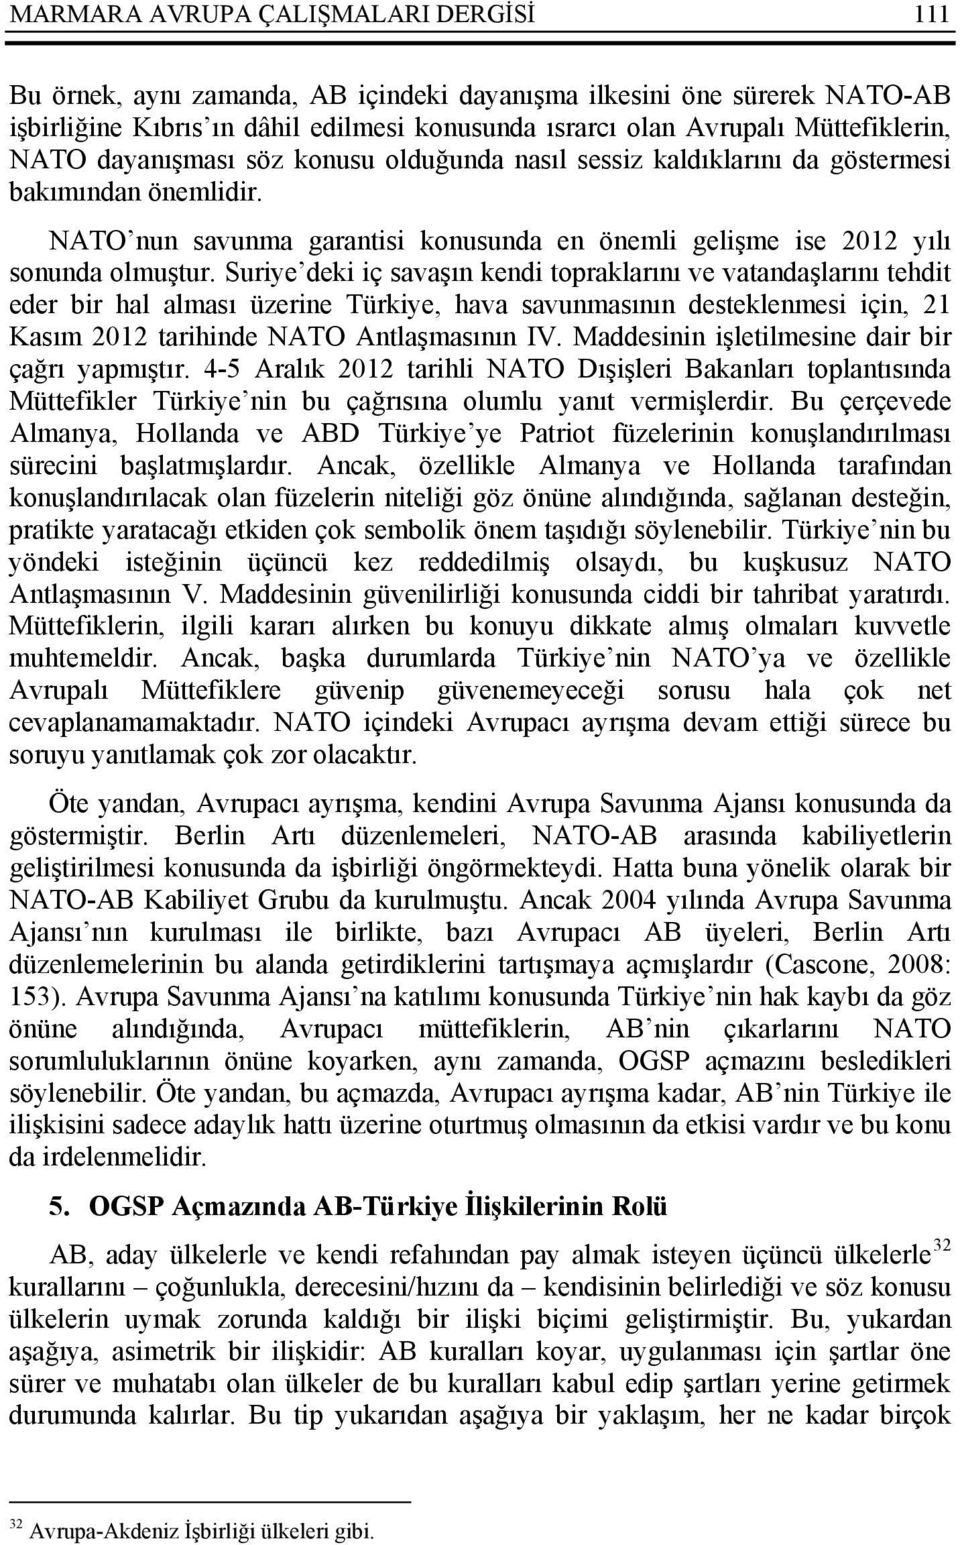 Suriye deki iç savaşın kendi topraklarını ve vatandaşlarını tehdit eder bir hal alması üzerine Türkiye, hava savunmasının desteklenmesi için, 21 Kasım 2012 tarihinde NATO Antlaşmasının IV.